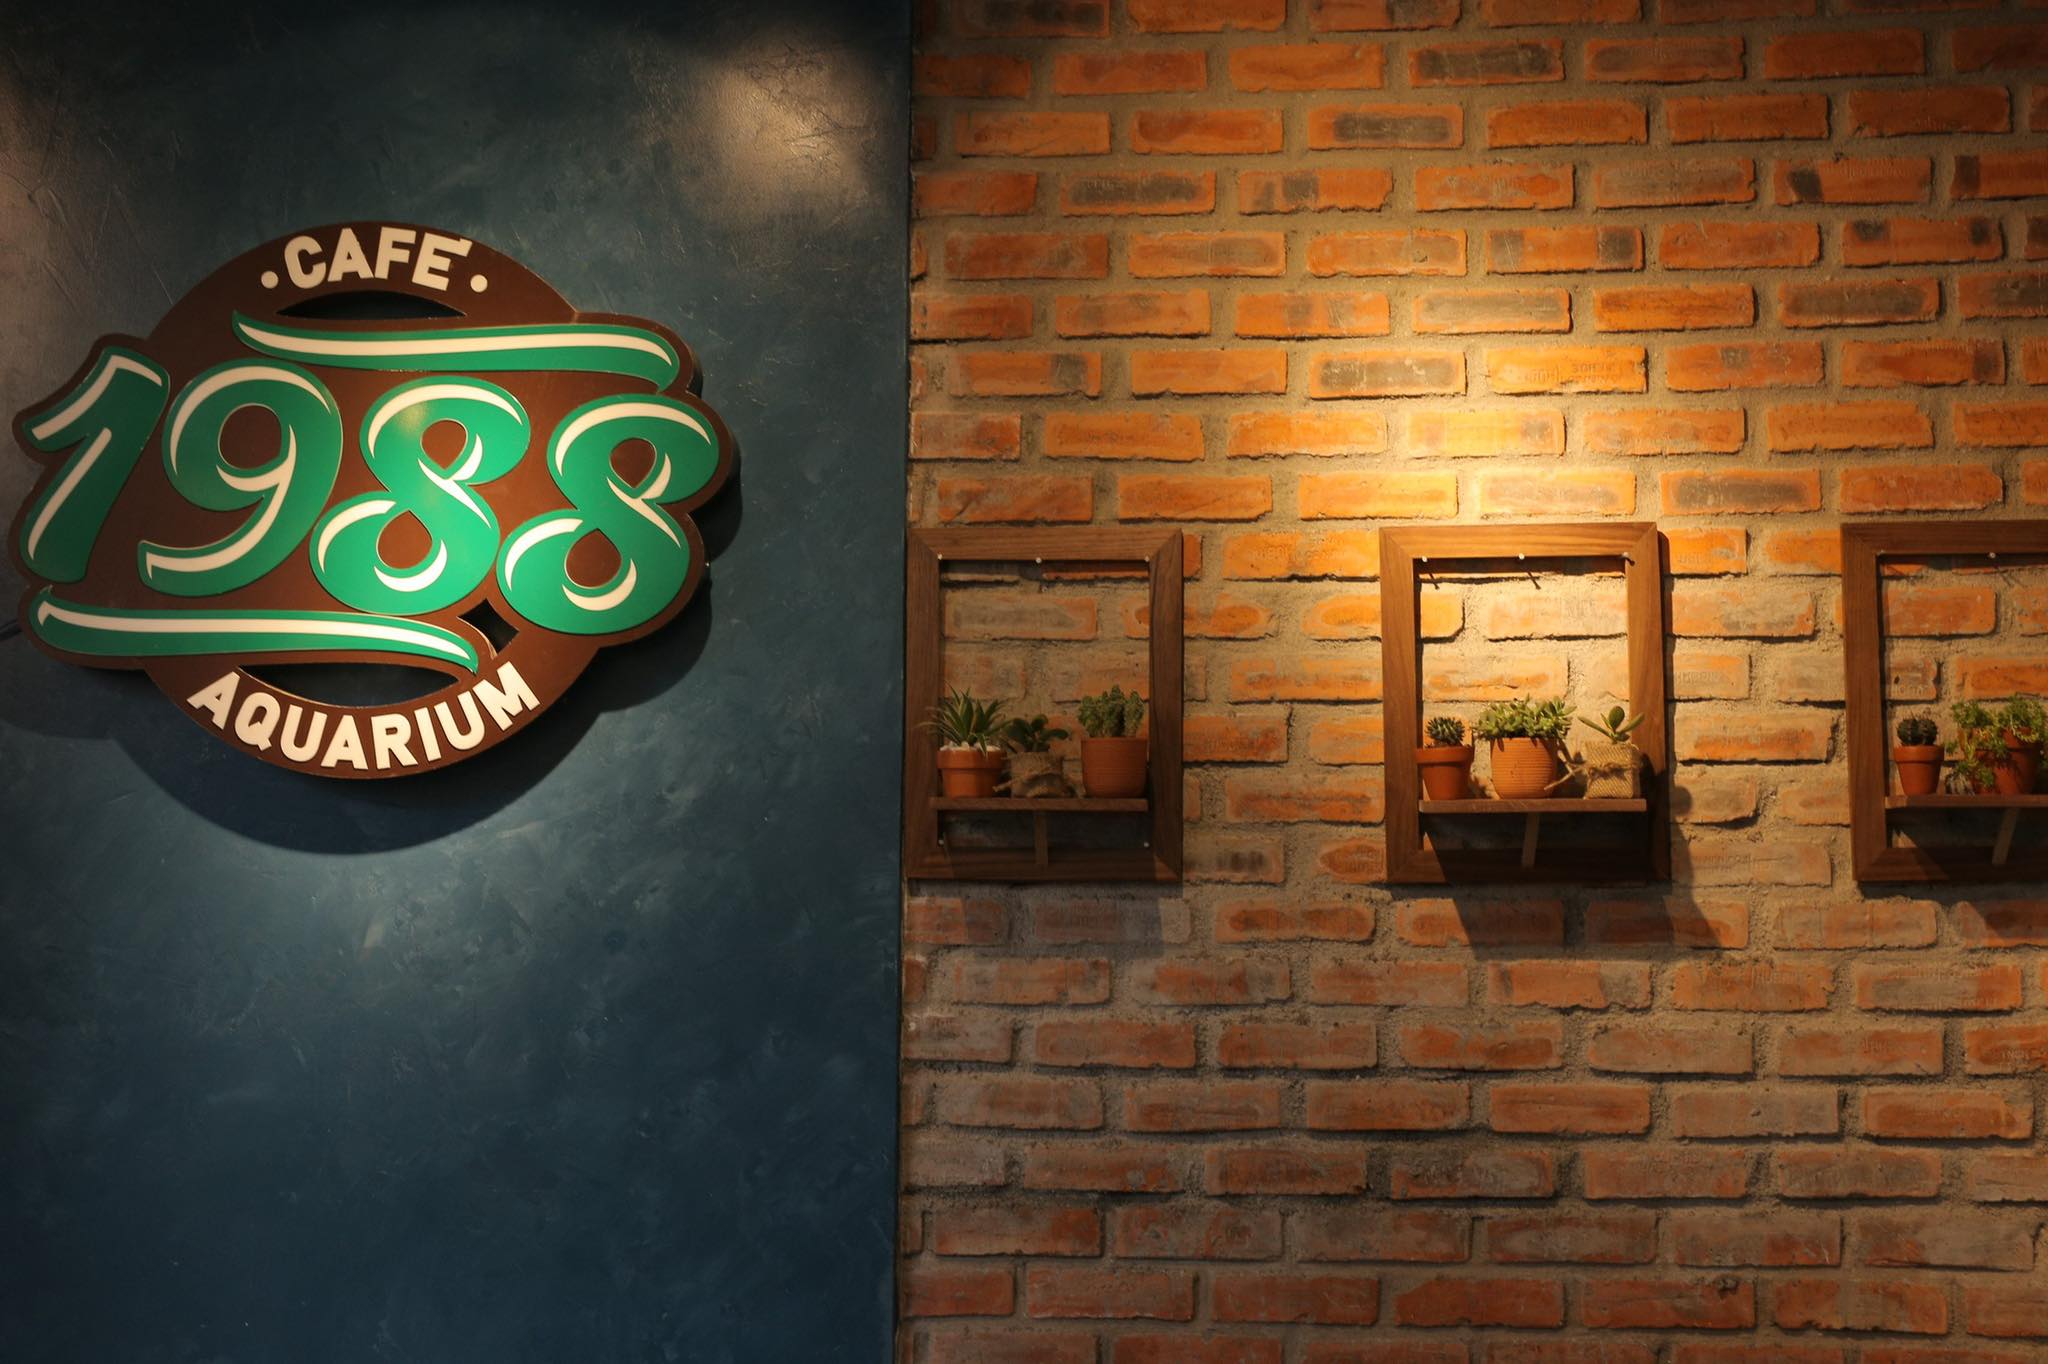 1988 Café & Aquarium